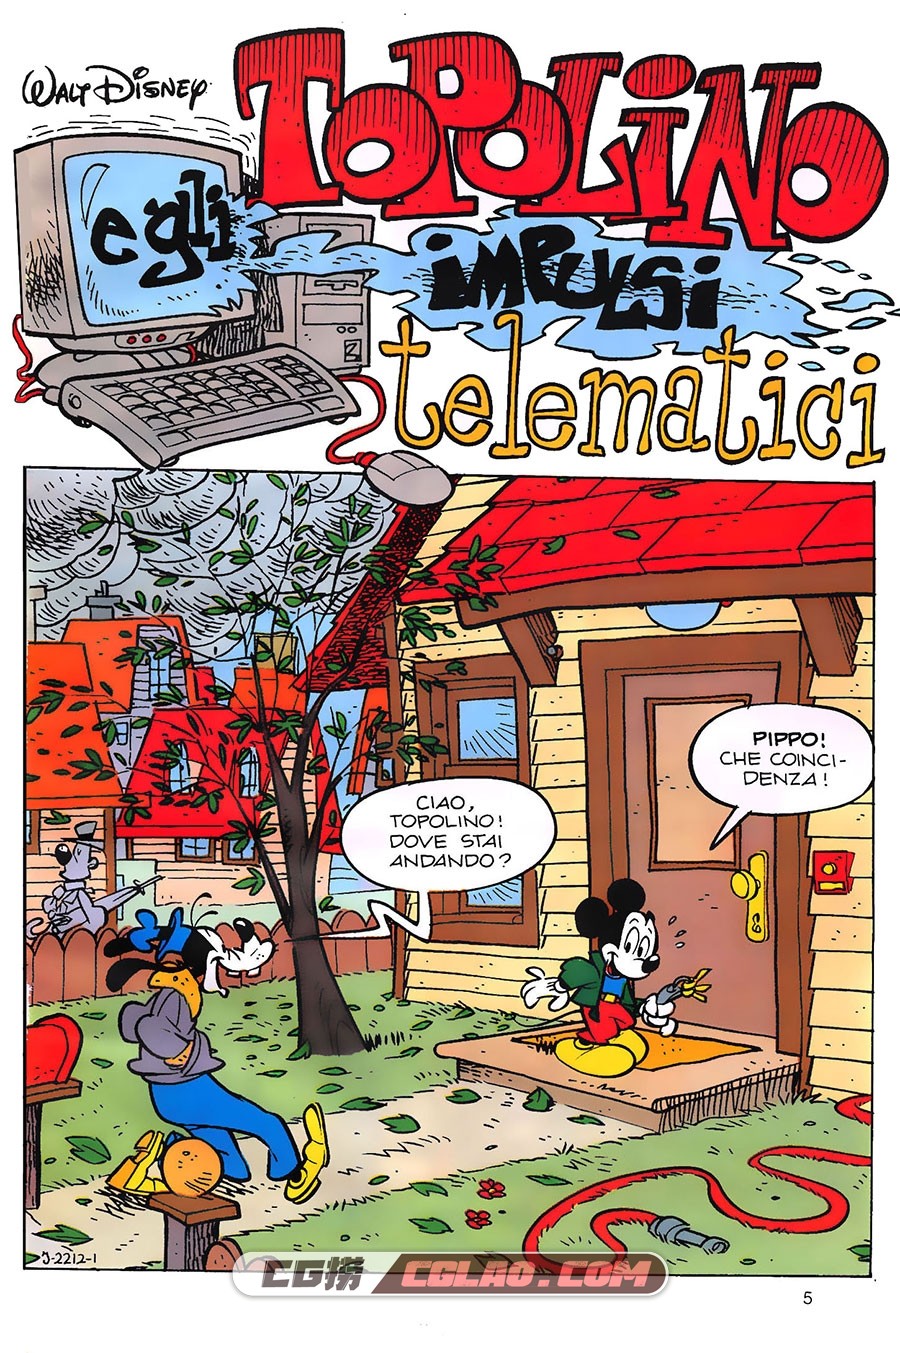 I Classici Disney 410 Serie II Le Storie che hanno fatto storia 漫画,Classici-Disney-410-Bibbo64_005.jpg